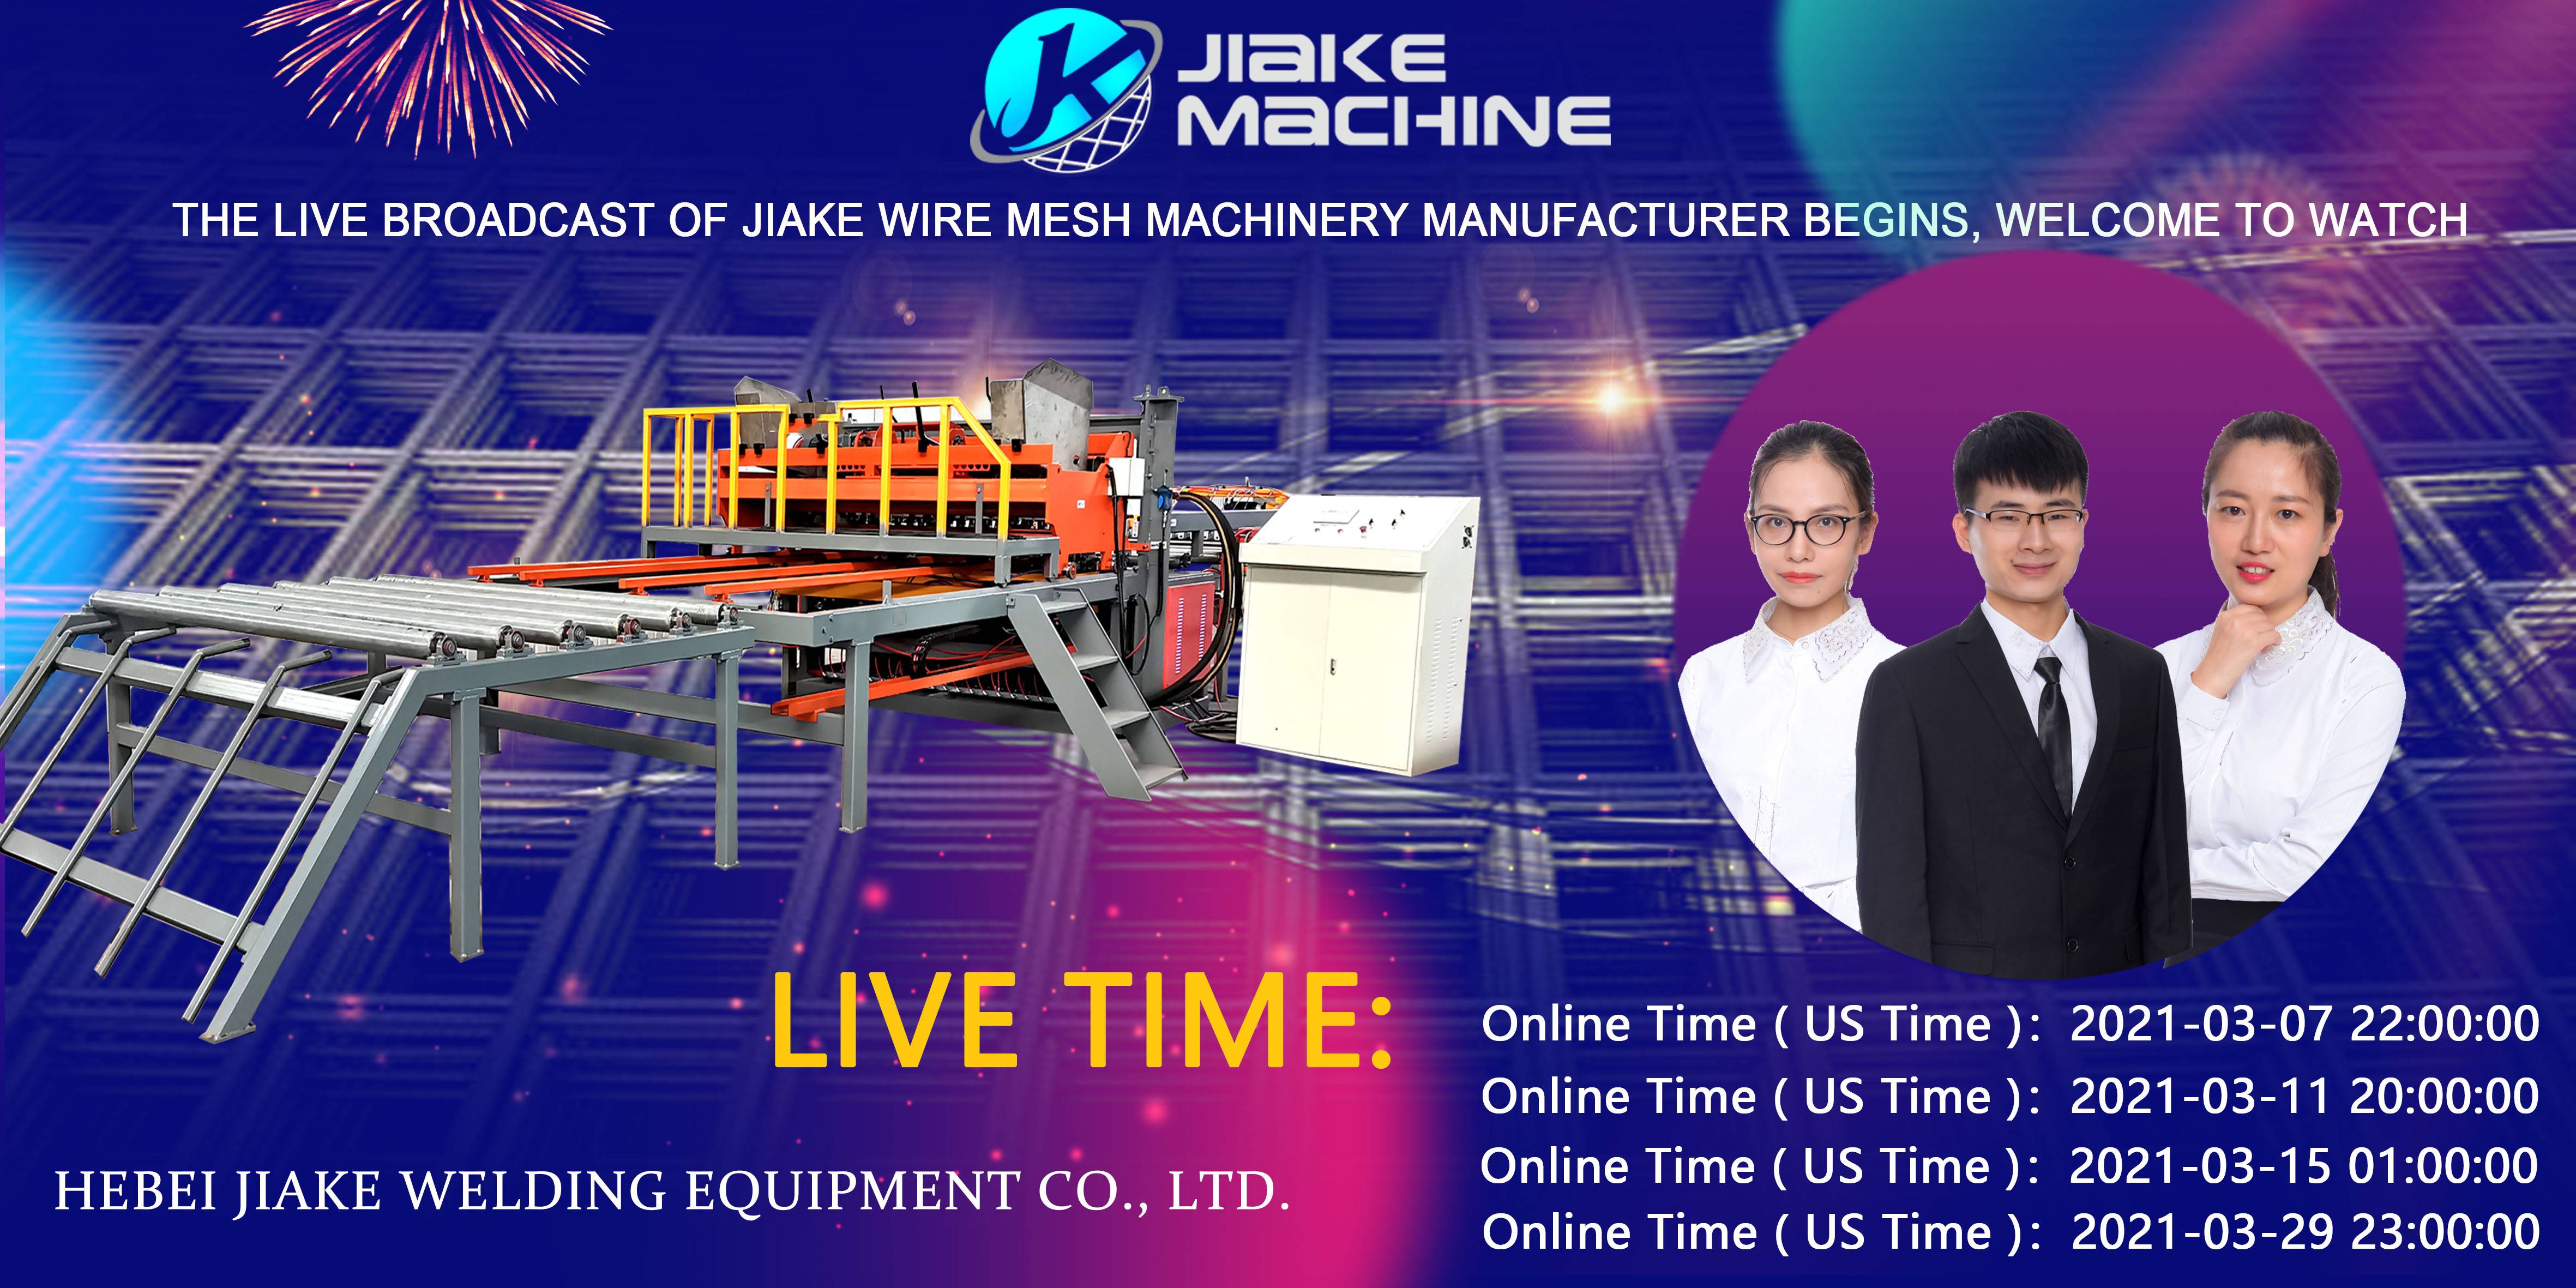 De live útstjoering fan Jiake Wire Mesh Machinery komt yn maart, wolkom om te sjen